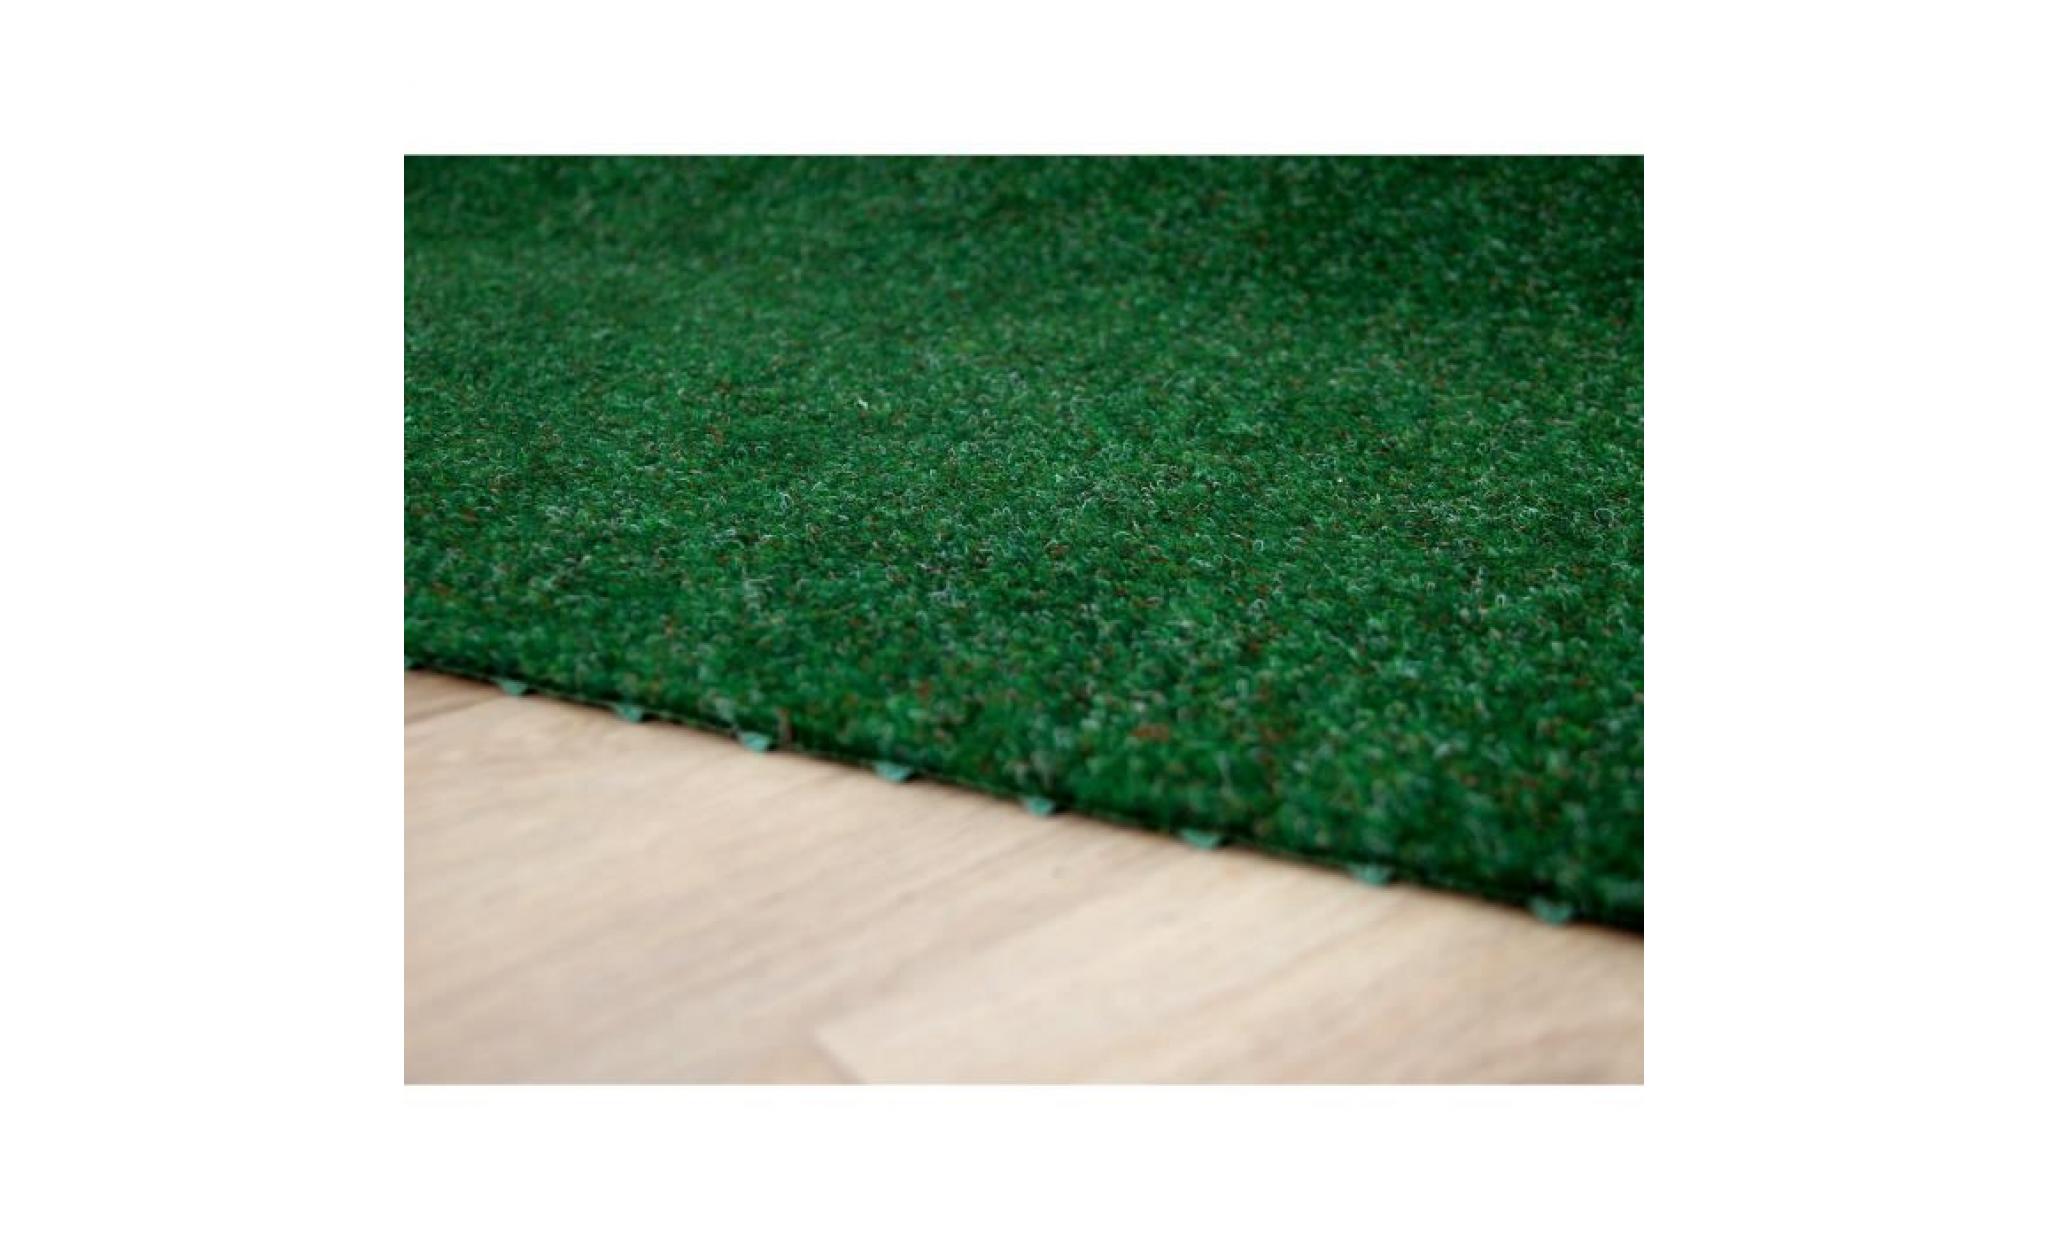 kingston   tapis type gazon artificiel – pour jardin, terrasse, balcon   vert mélangé [200x150 cm] pas cher